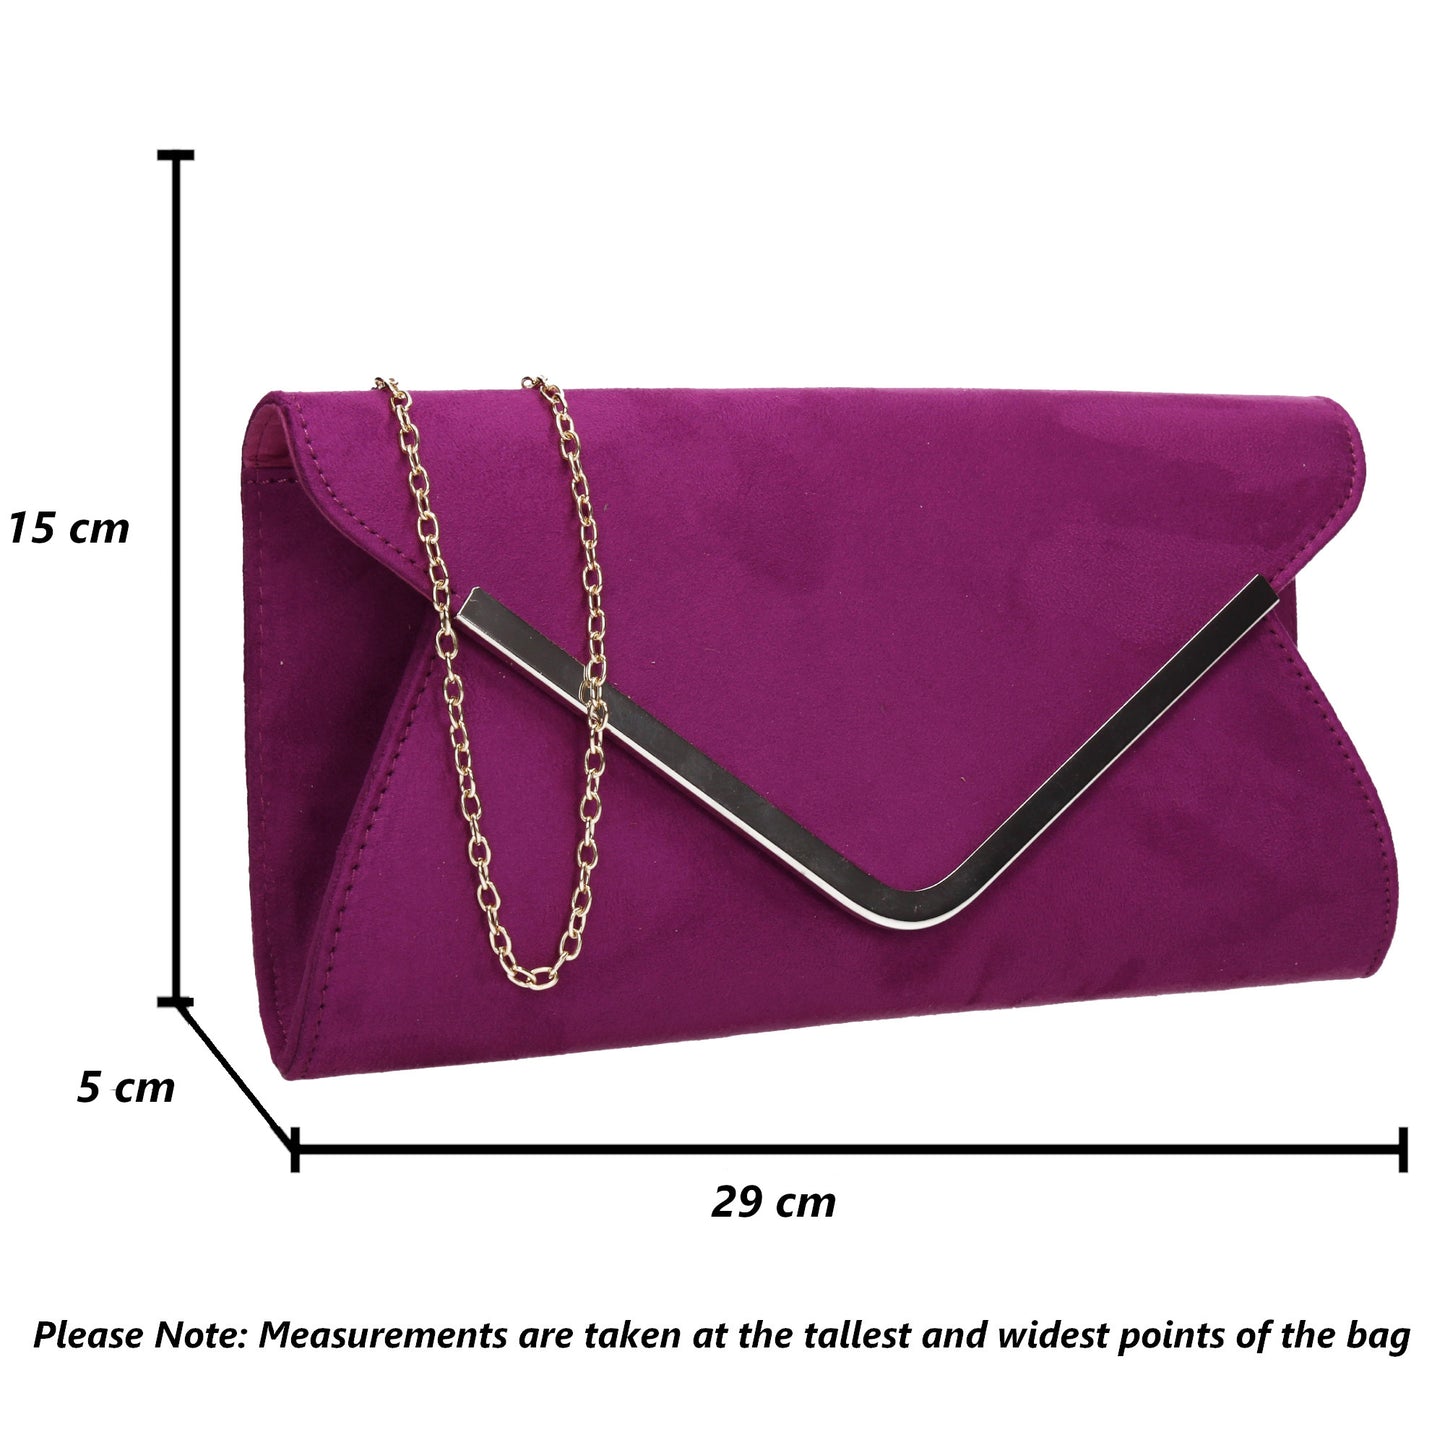 SWANKYSWANS Karlie Suede Clutch Bag Purple